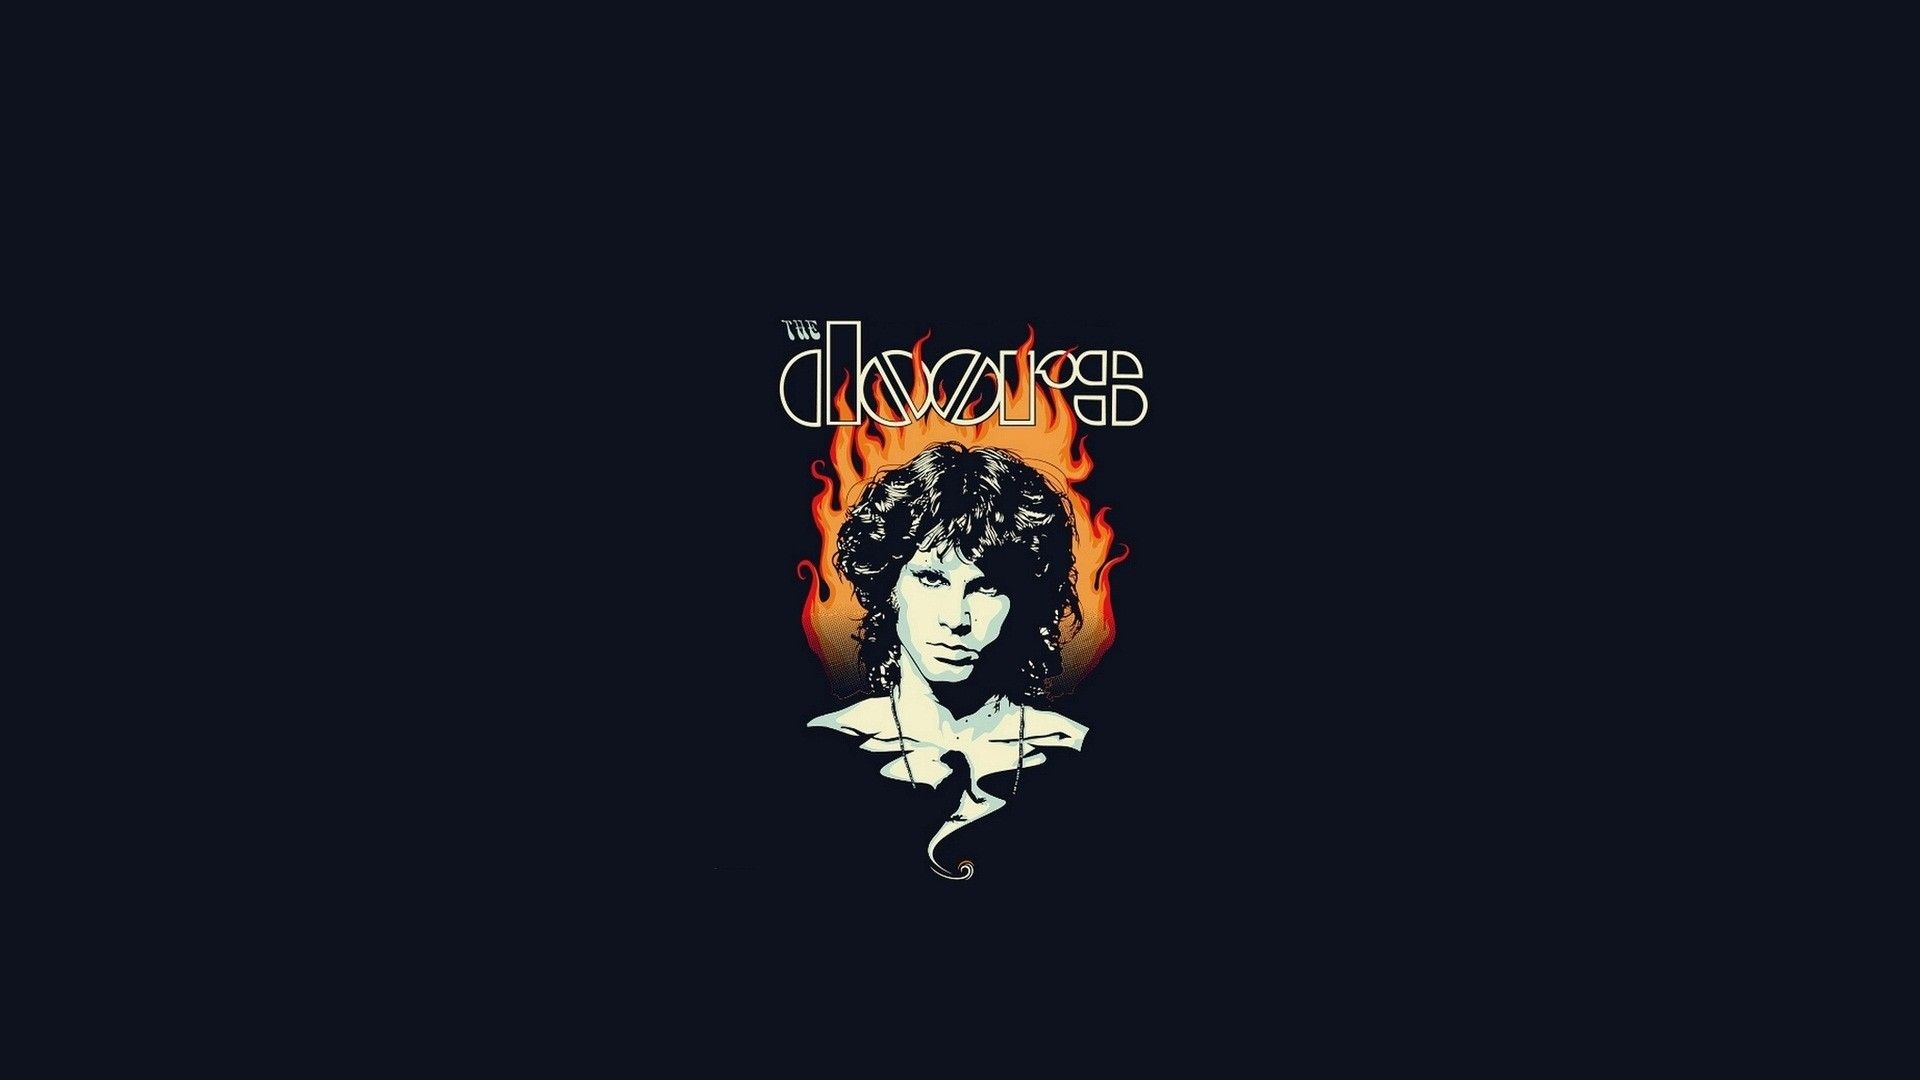 The Doors, Wallpapers, Backgrounds, Rock music, 1920x1080 Full HD Desktop